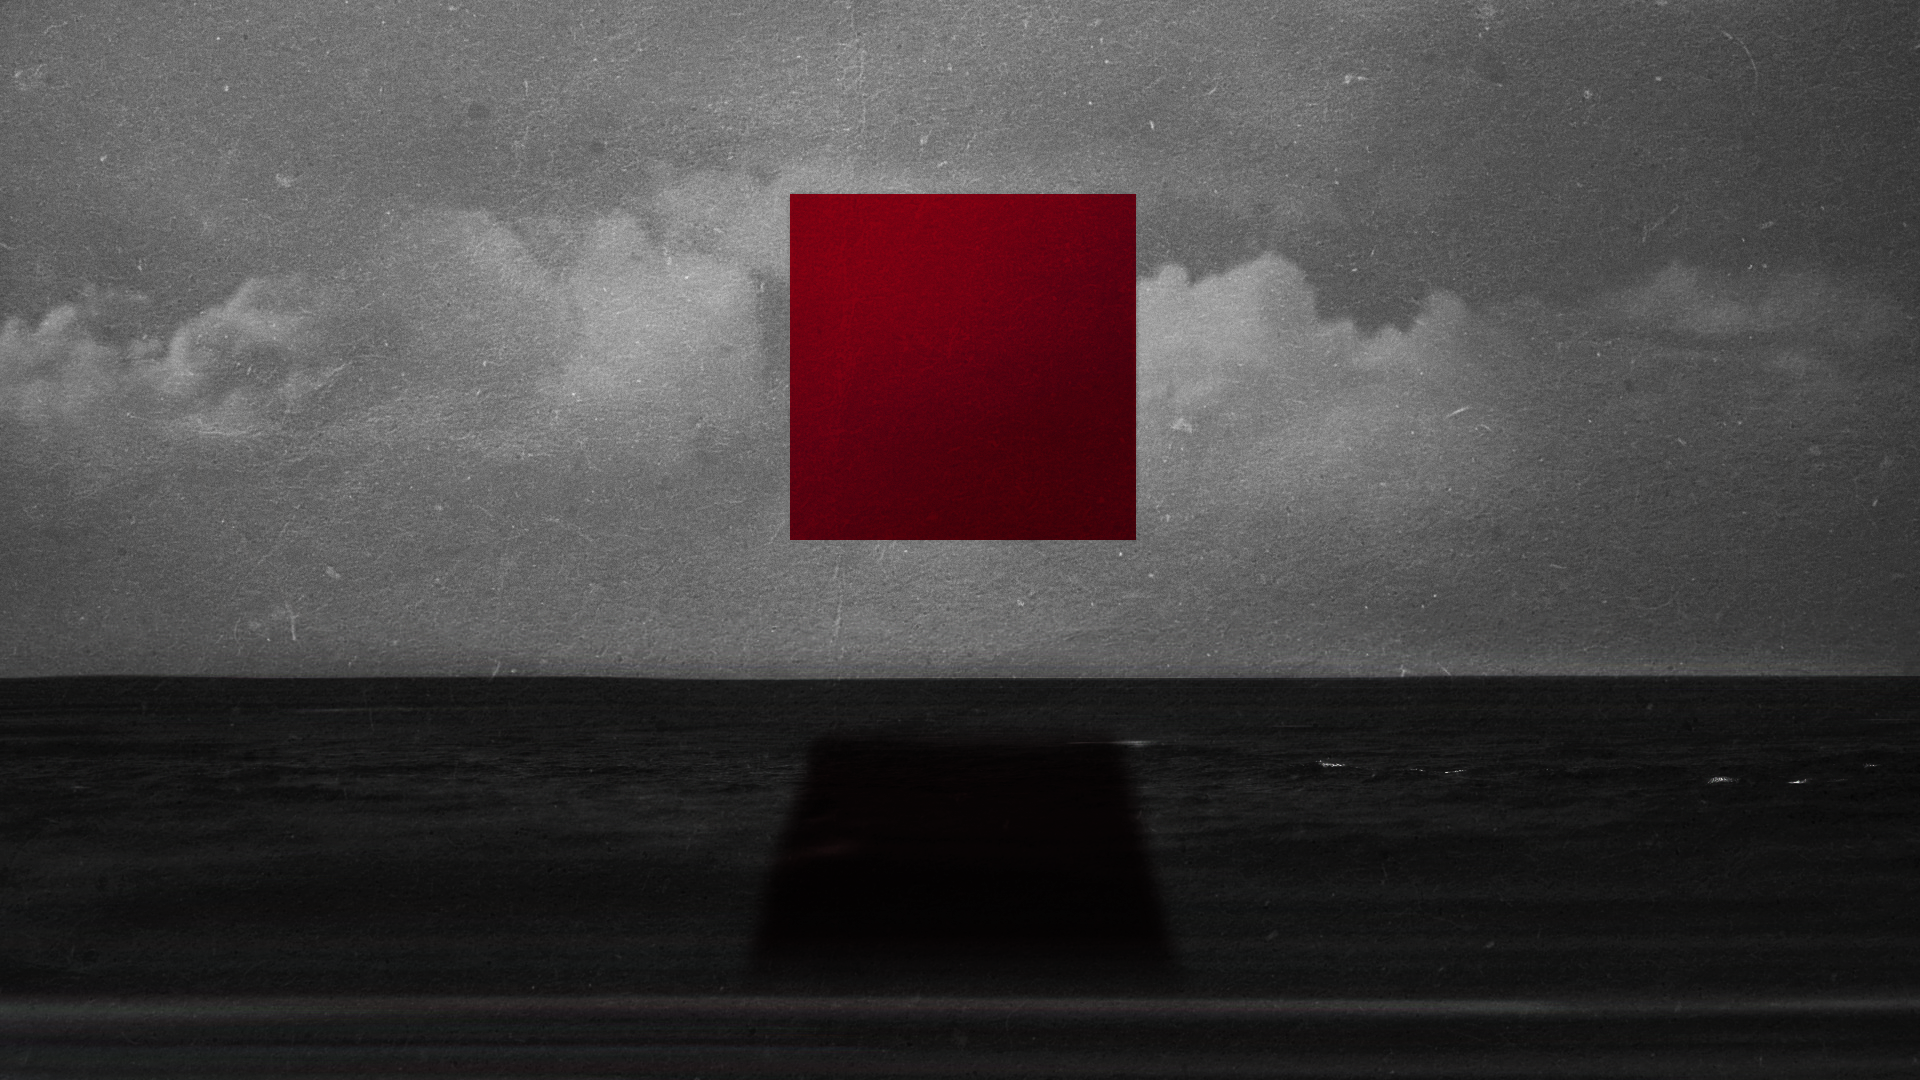 абстракции, облака, красный цвет, тени, выборочная раскраска, квадраты - обои на рабочий стол